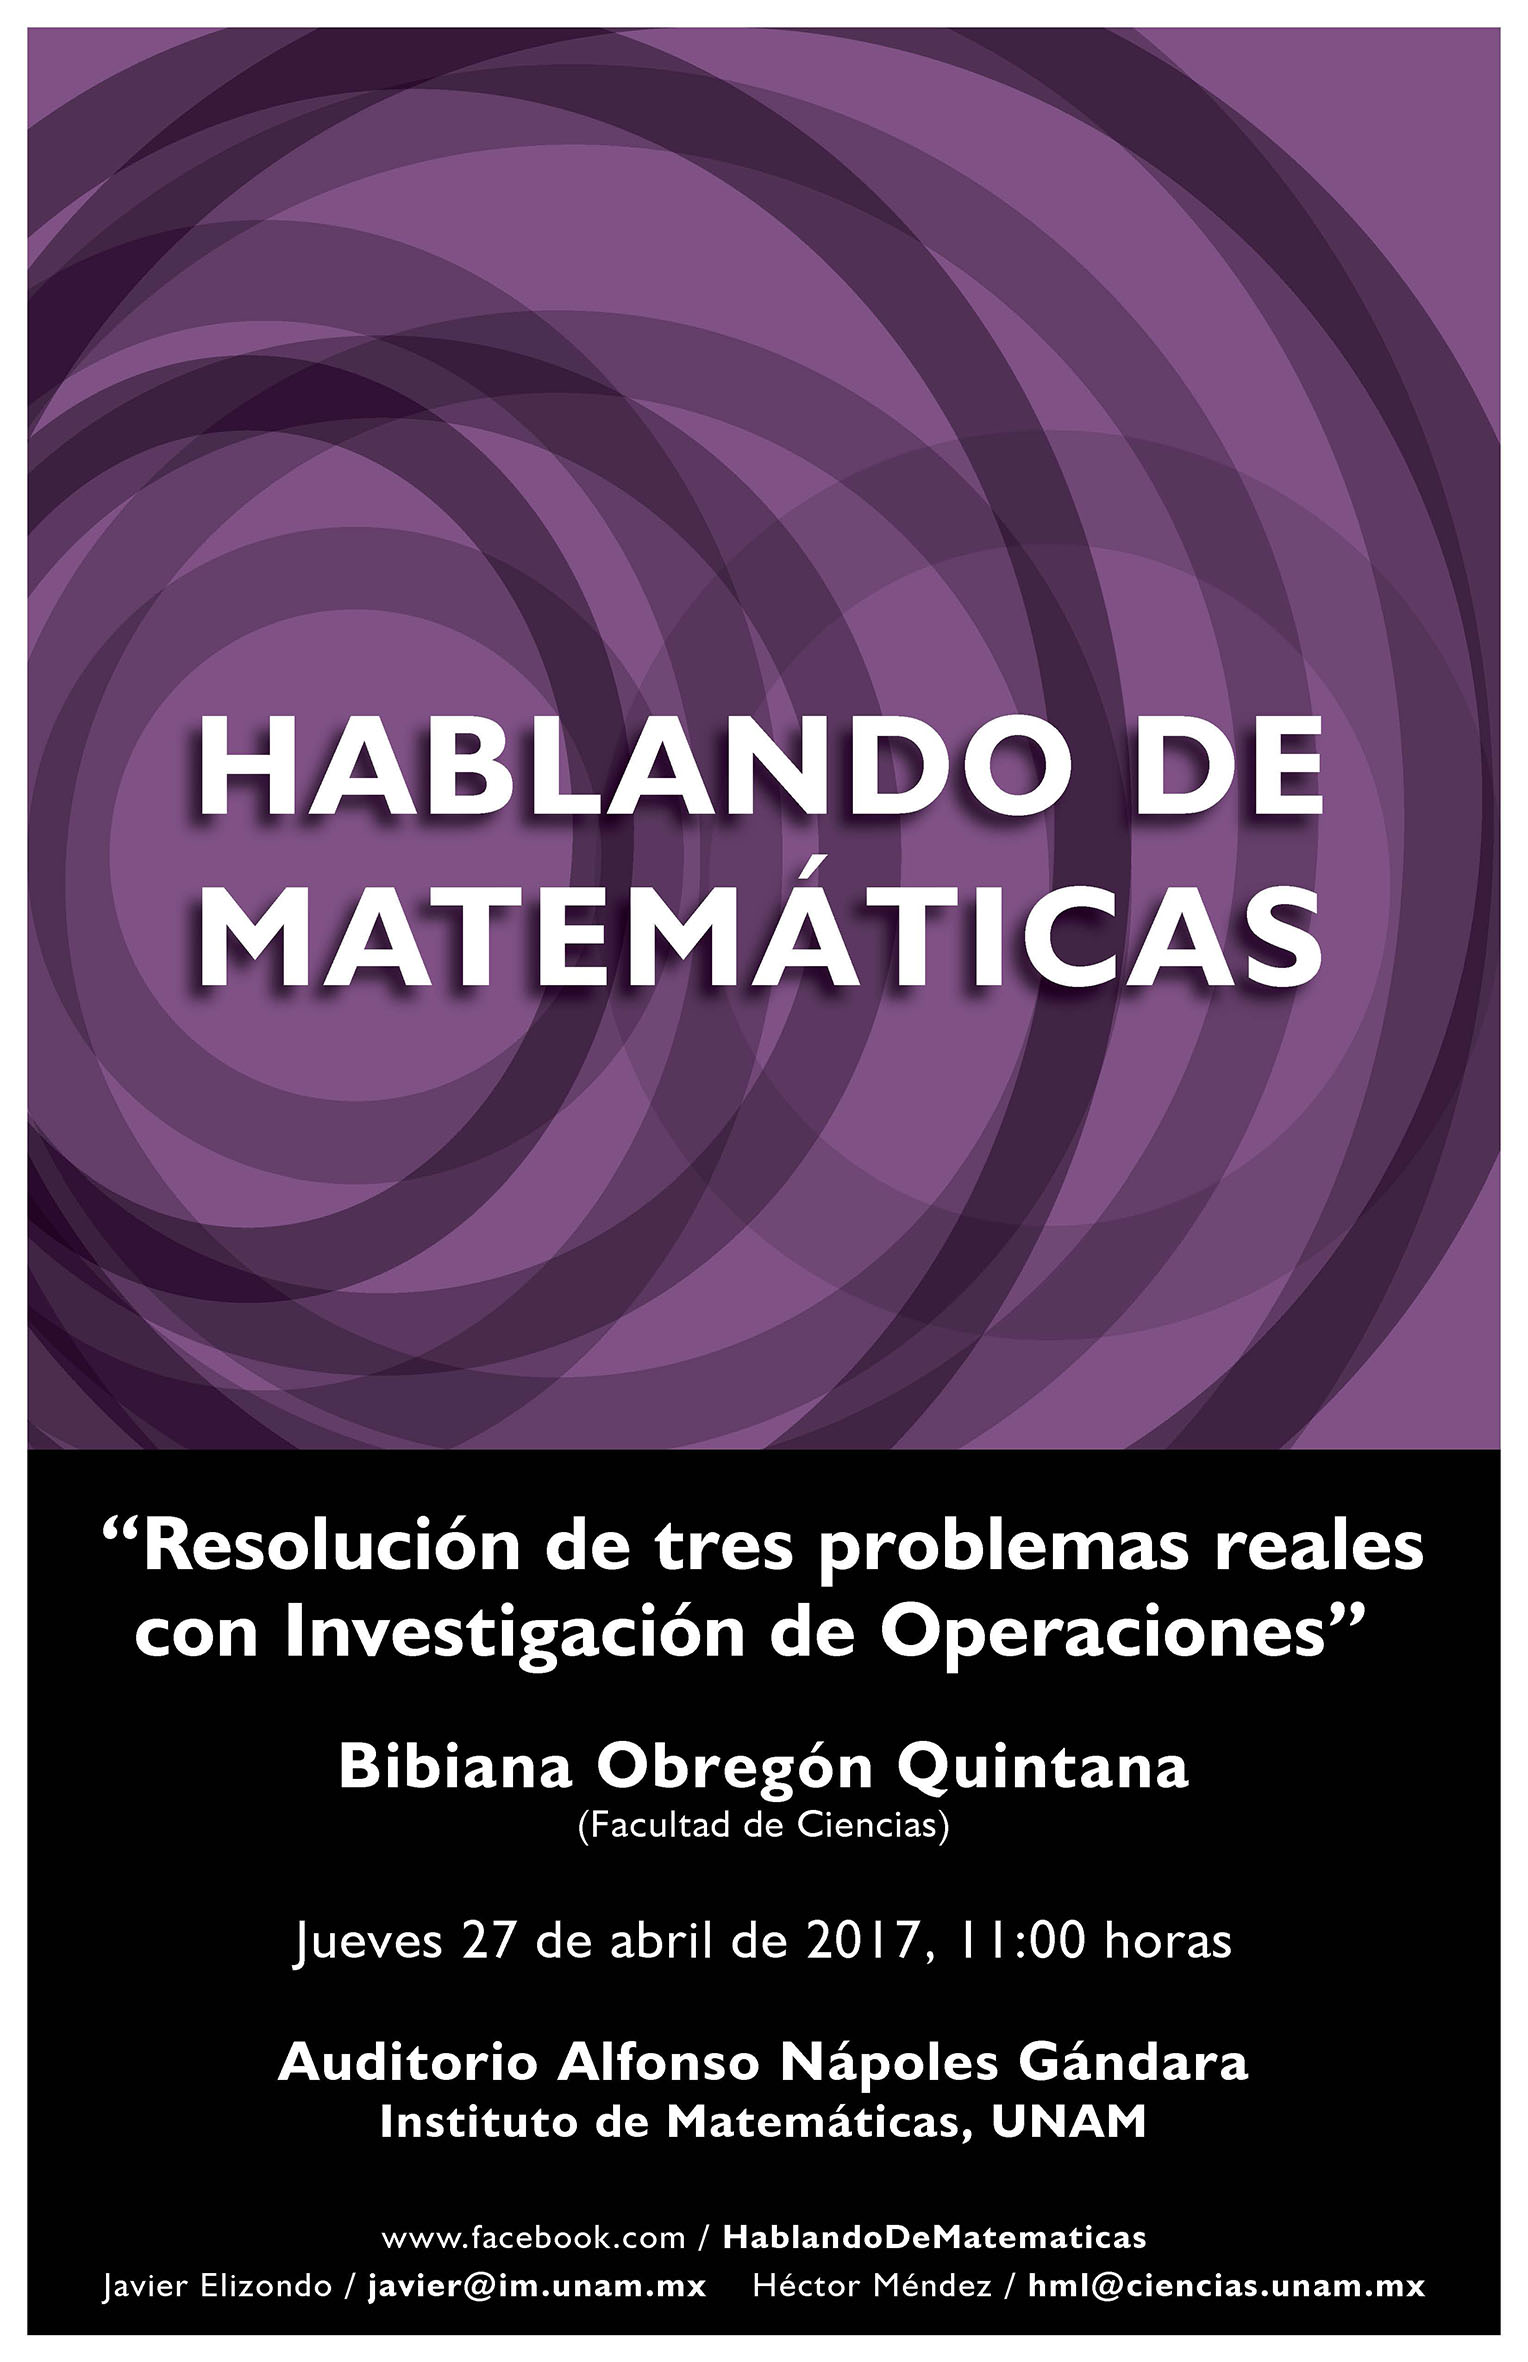 Hablando de Matemáticas: Bibiana Obregón Quintana, Facultad de Ciencias, UNAM